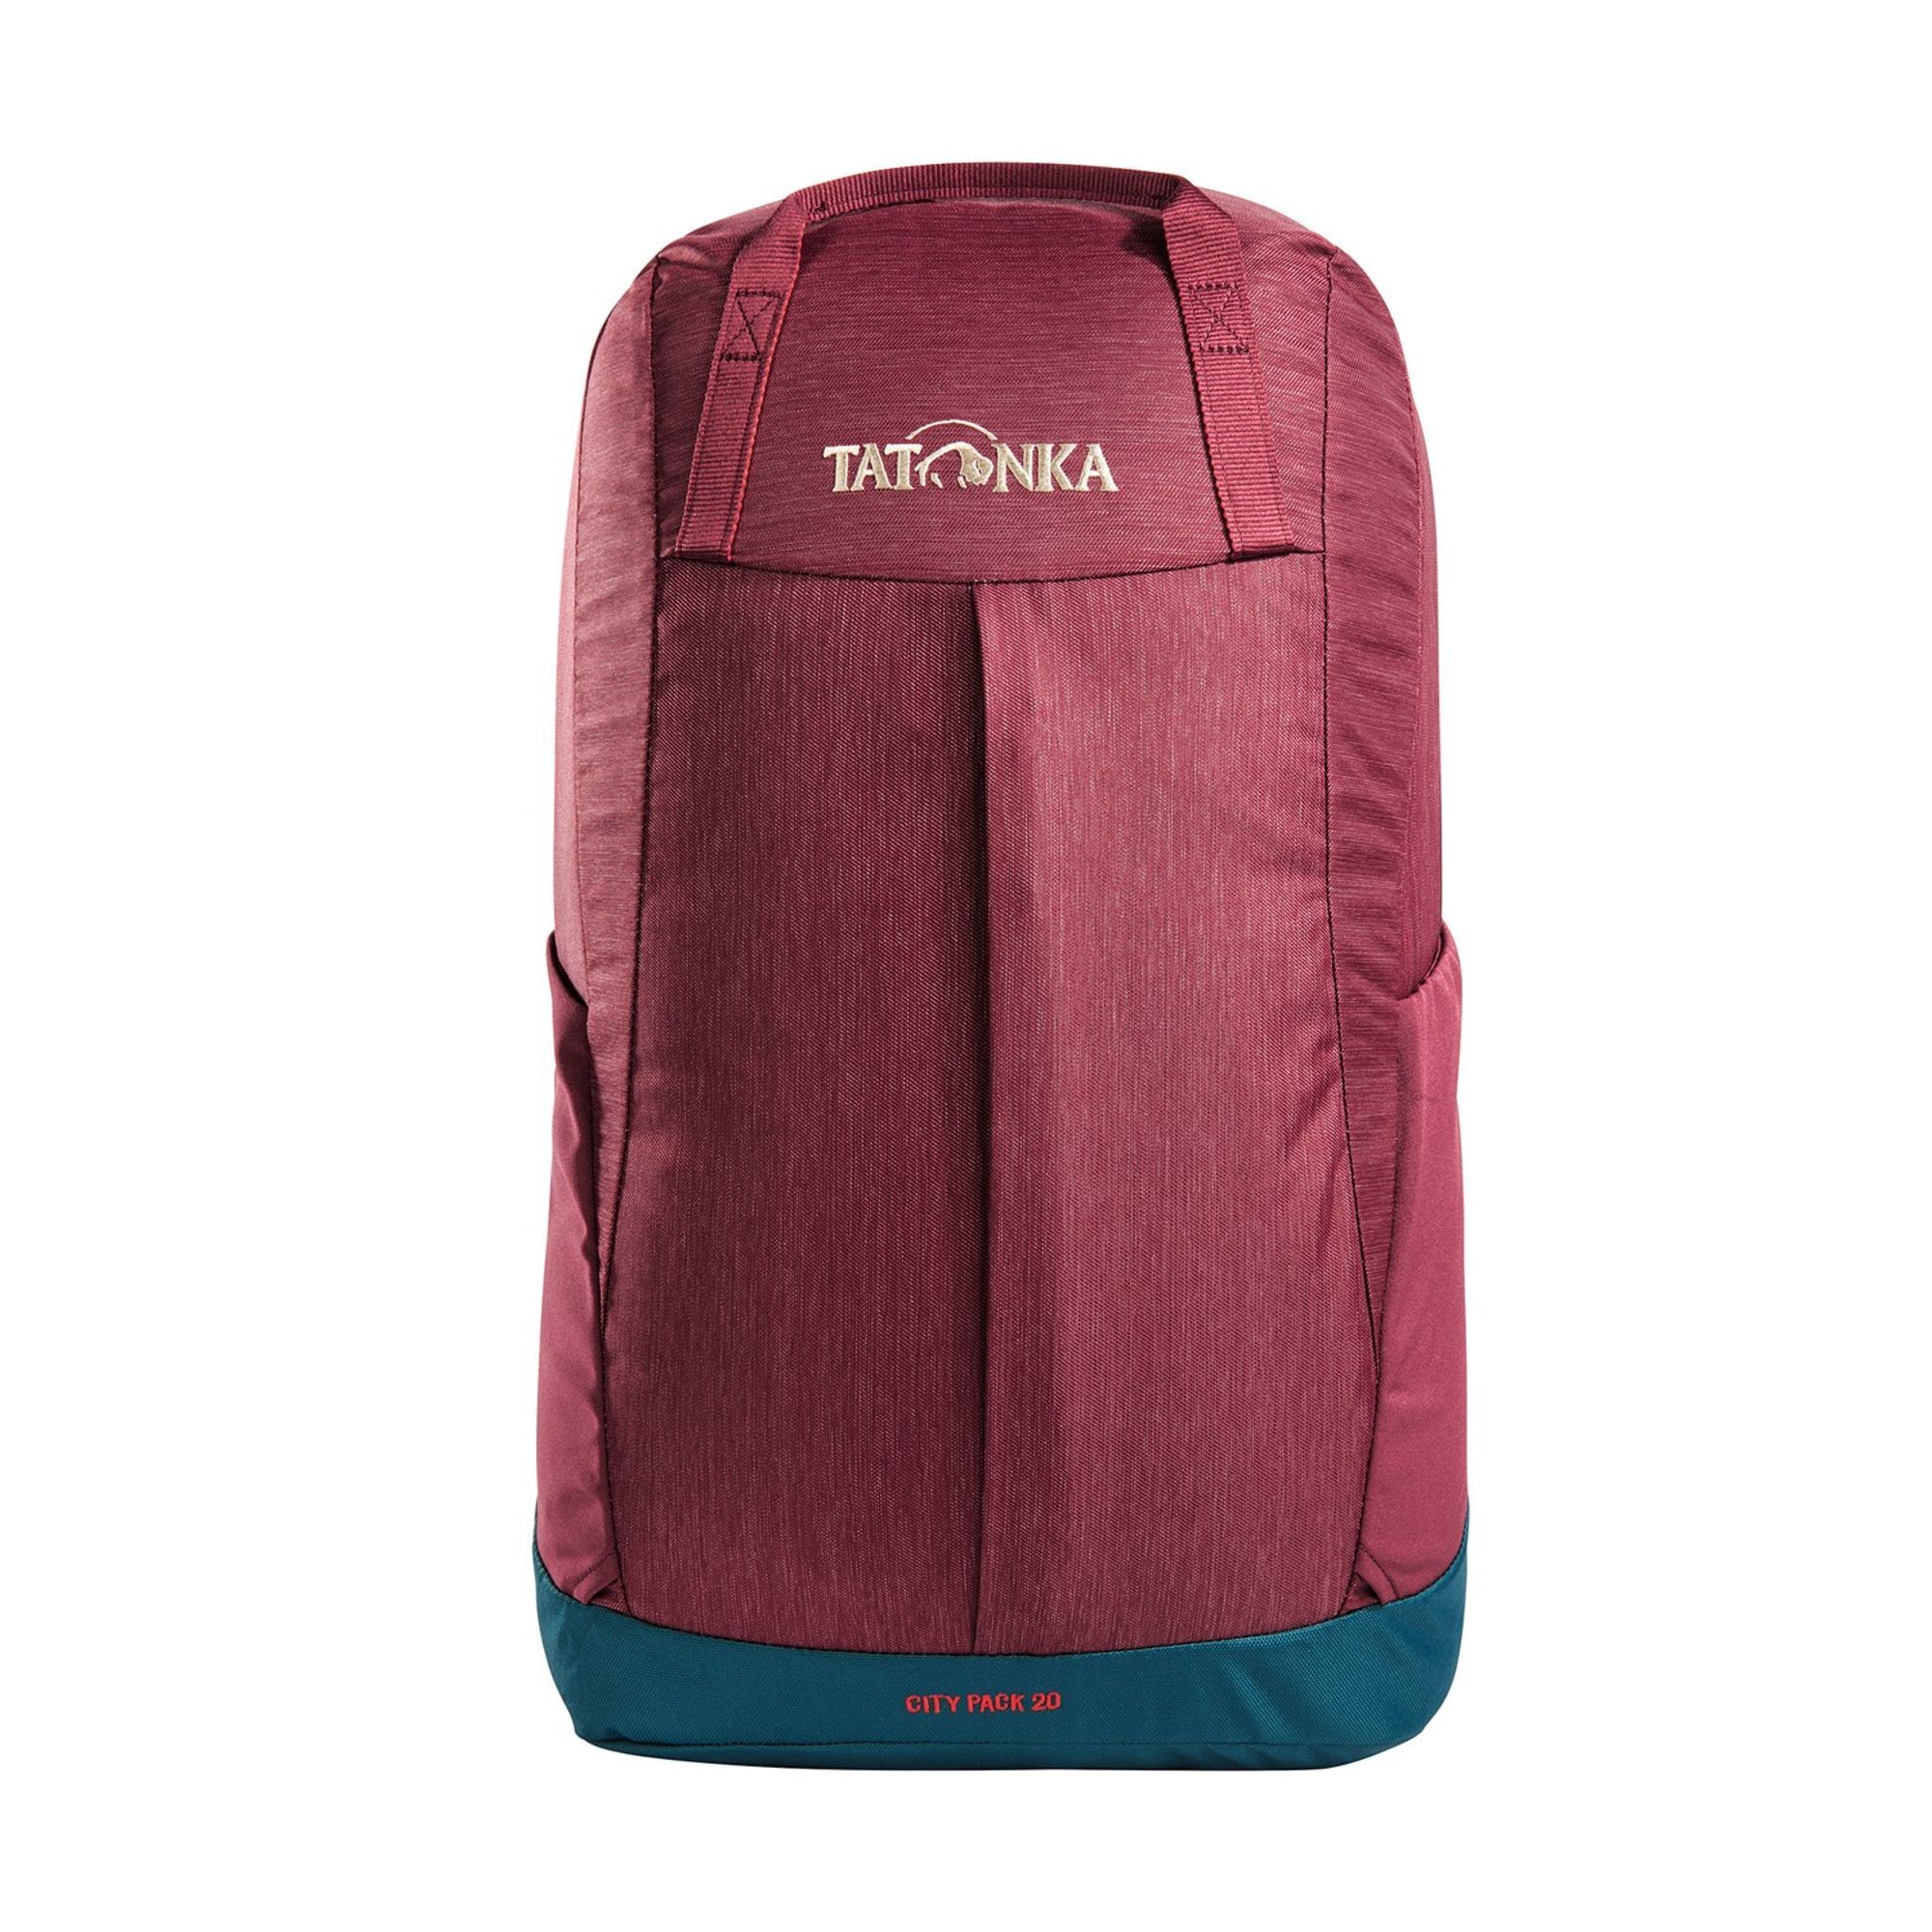 Рюкзак Tatonka City Pack 20 49 cm, цвет bordeaux red